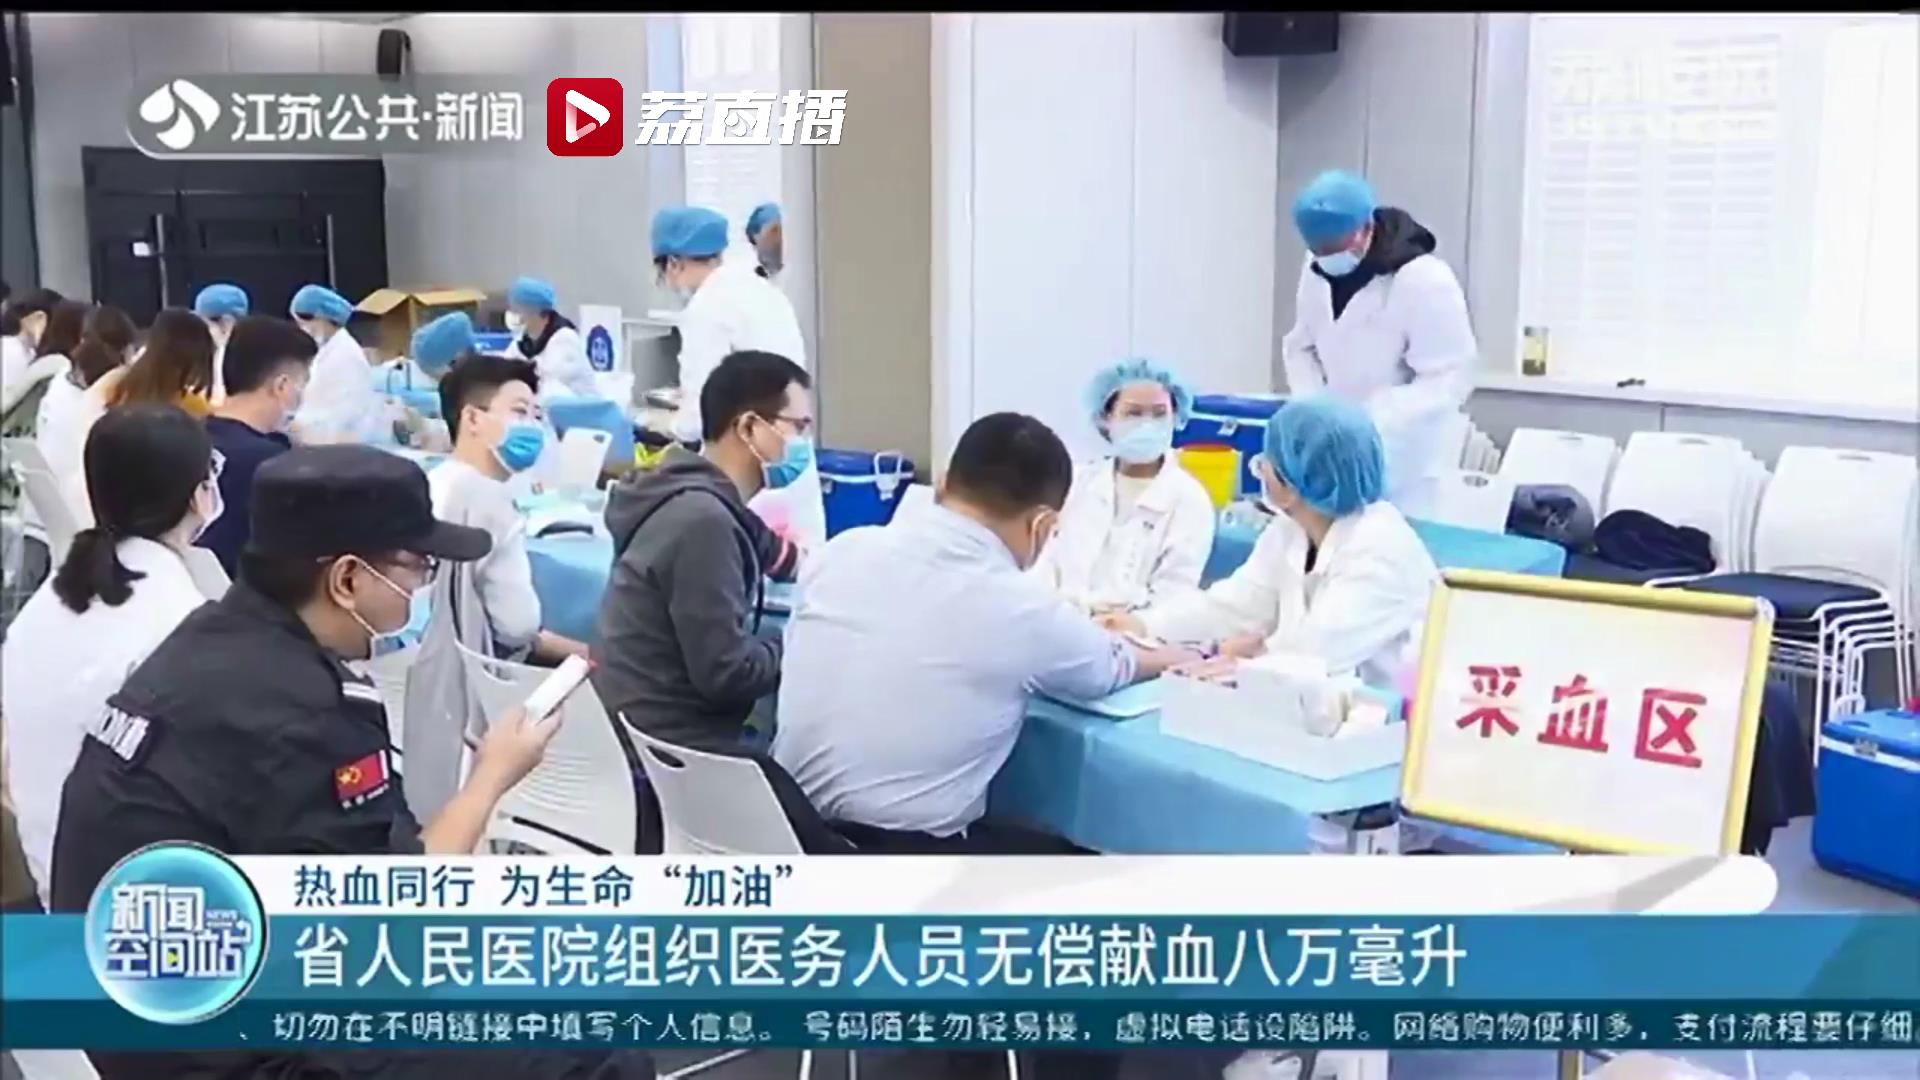 热血同行 为生命“加油”江苏省人民医院组织医务人员无偿献血八万毫升